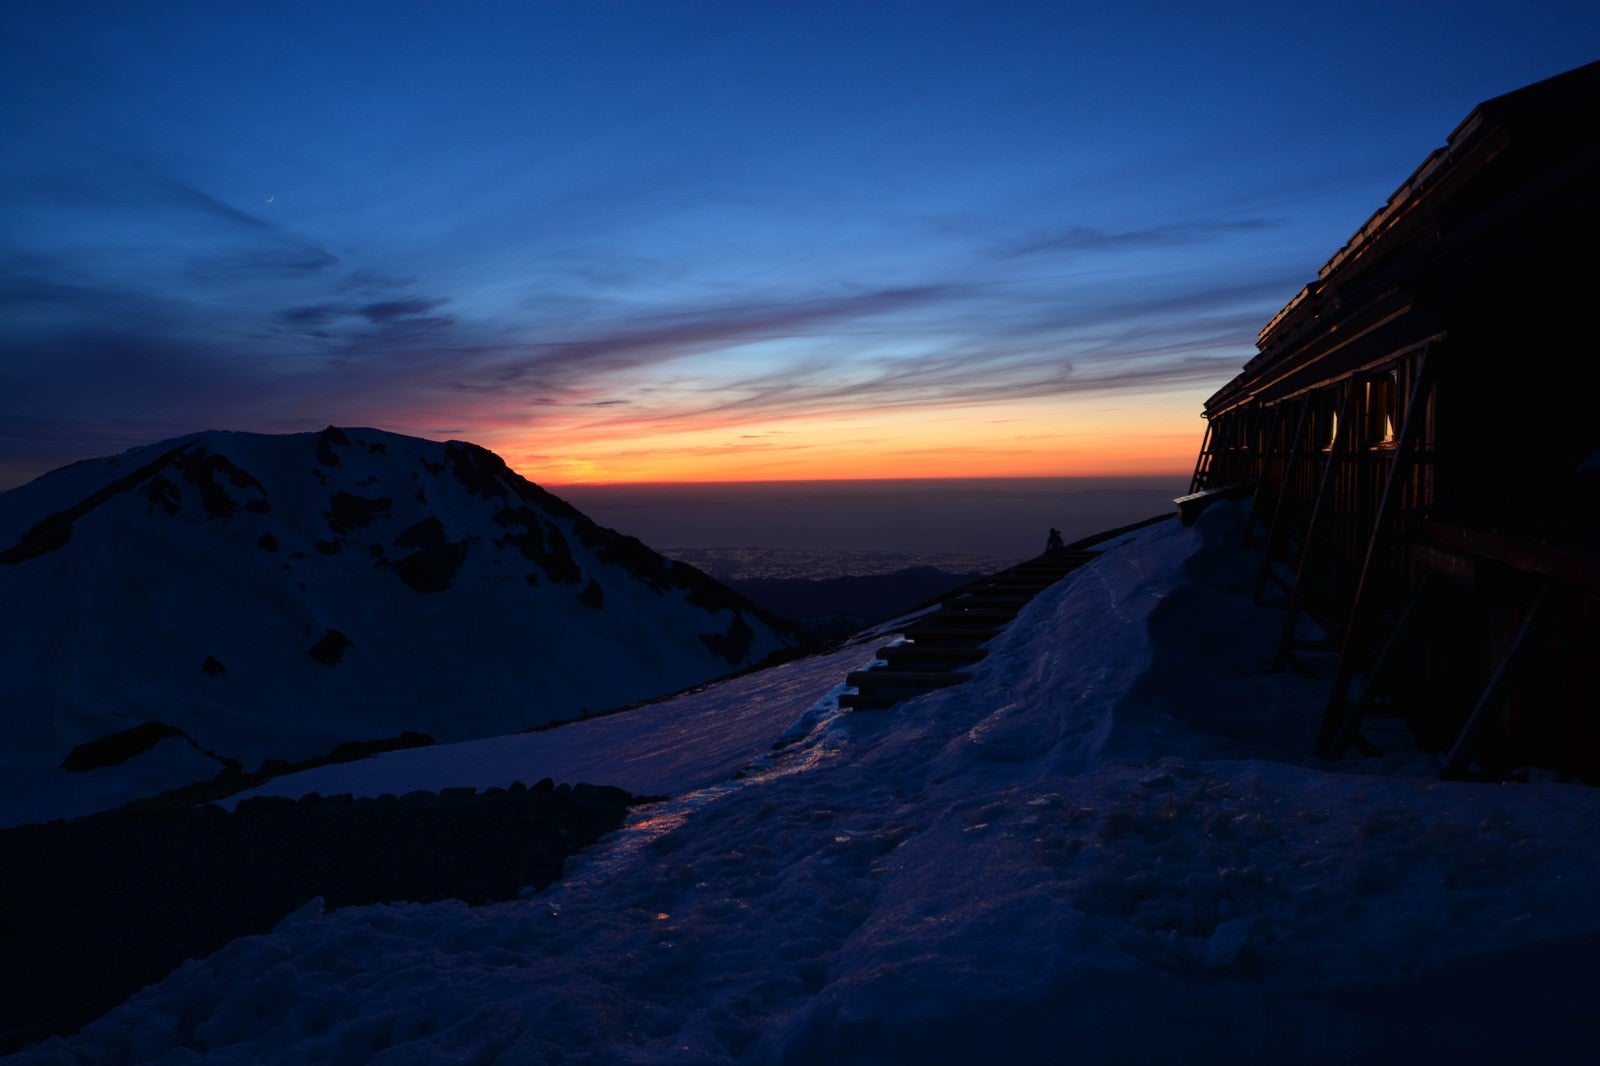 「白馬山荘の夕日」の写真